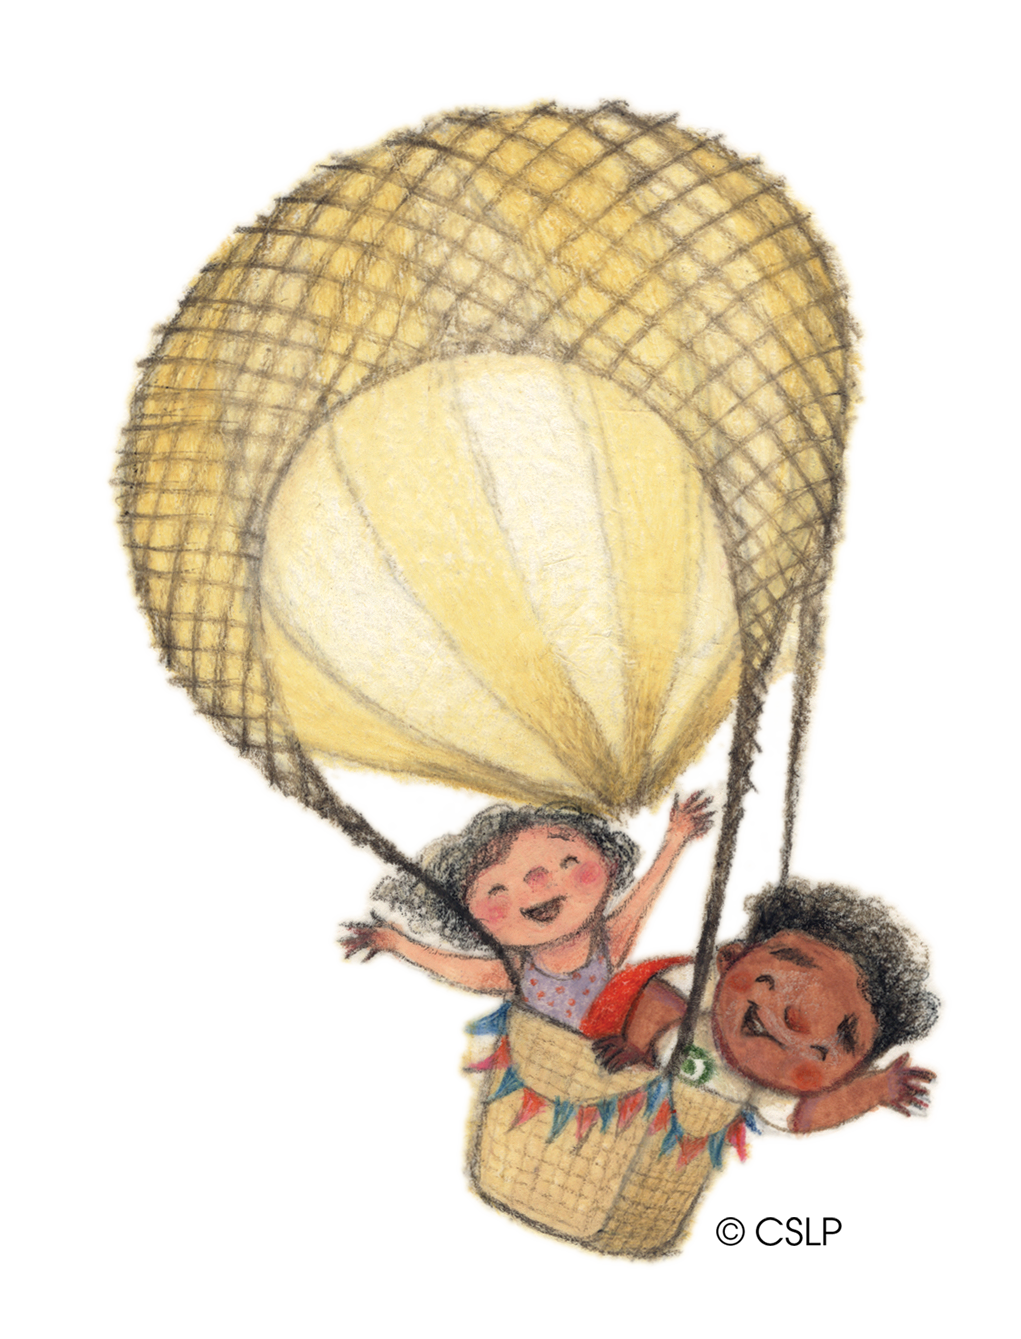 Children in hot-air balloon - copyright CSLP